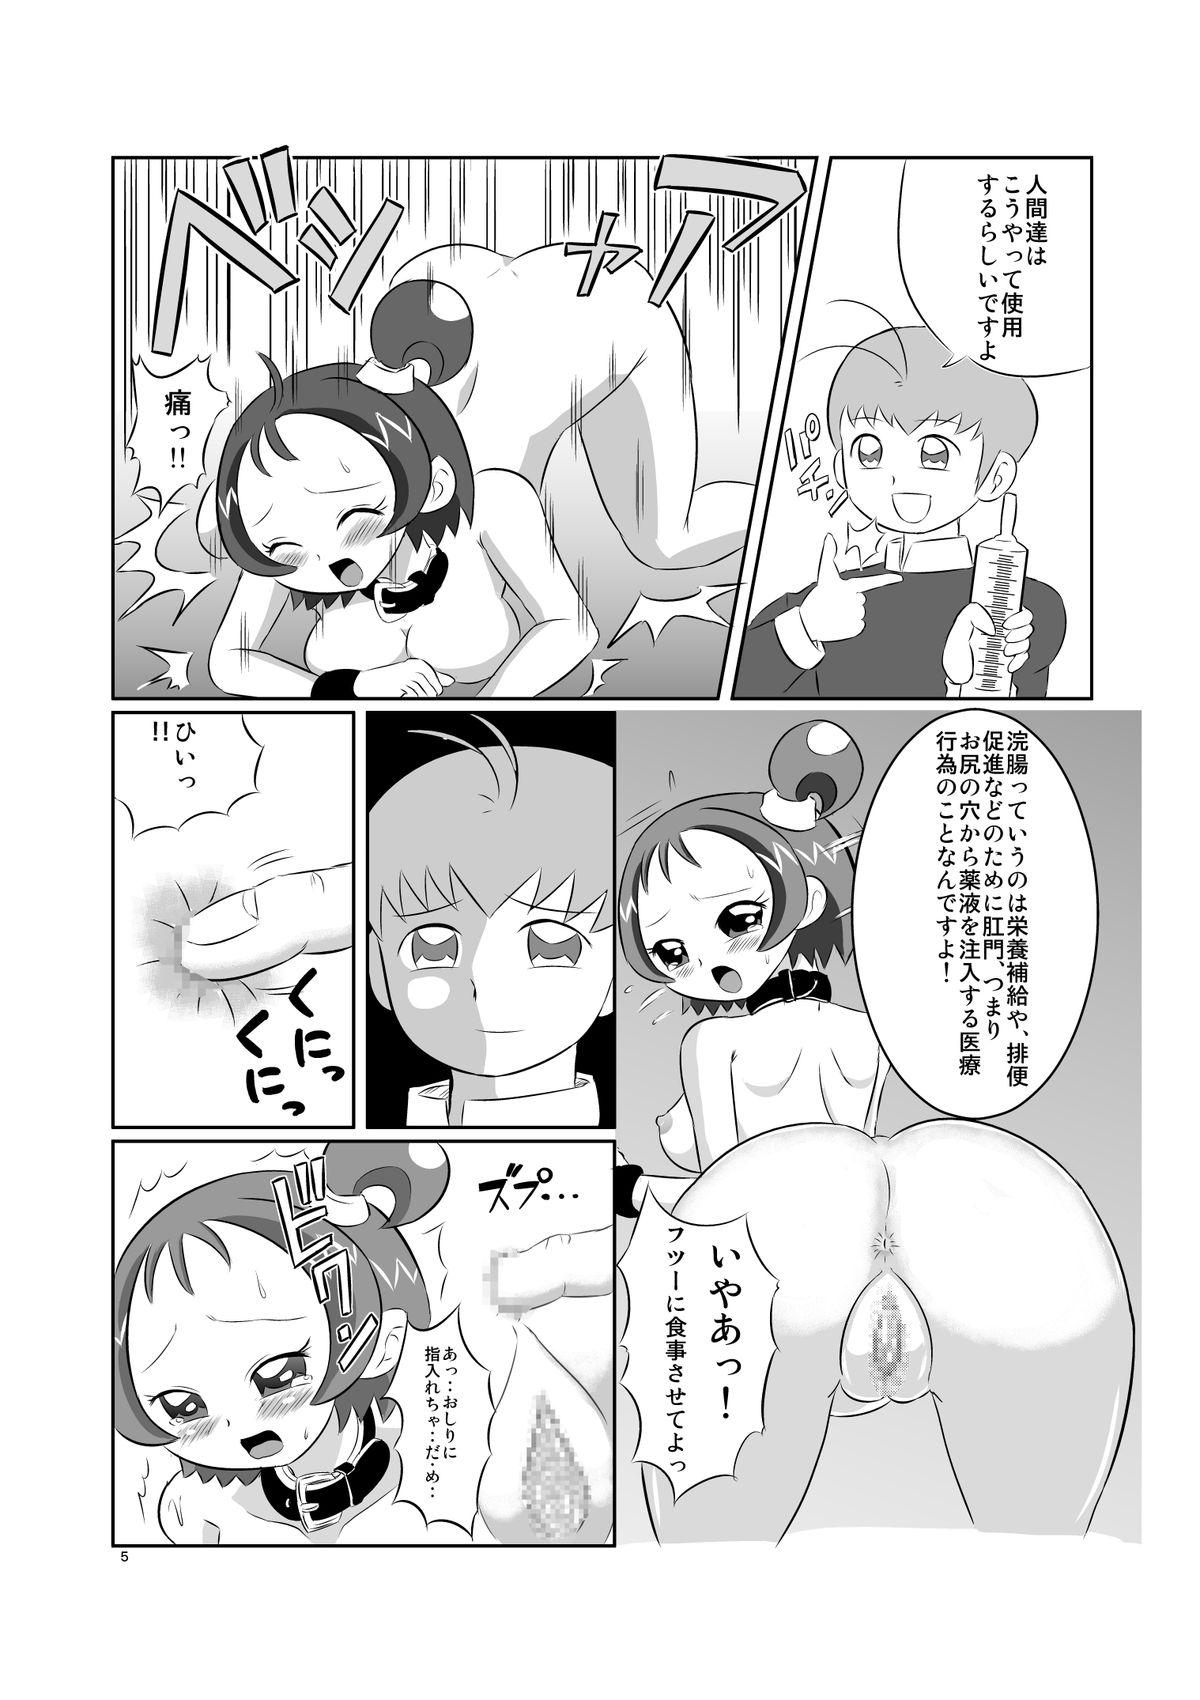 Puta DEEP PURPLE 肛虐調教編 - Ojamajo doremi Hot Fuck - Page 7